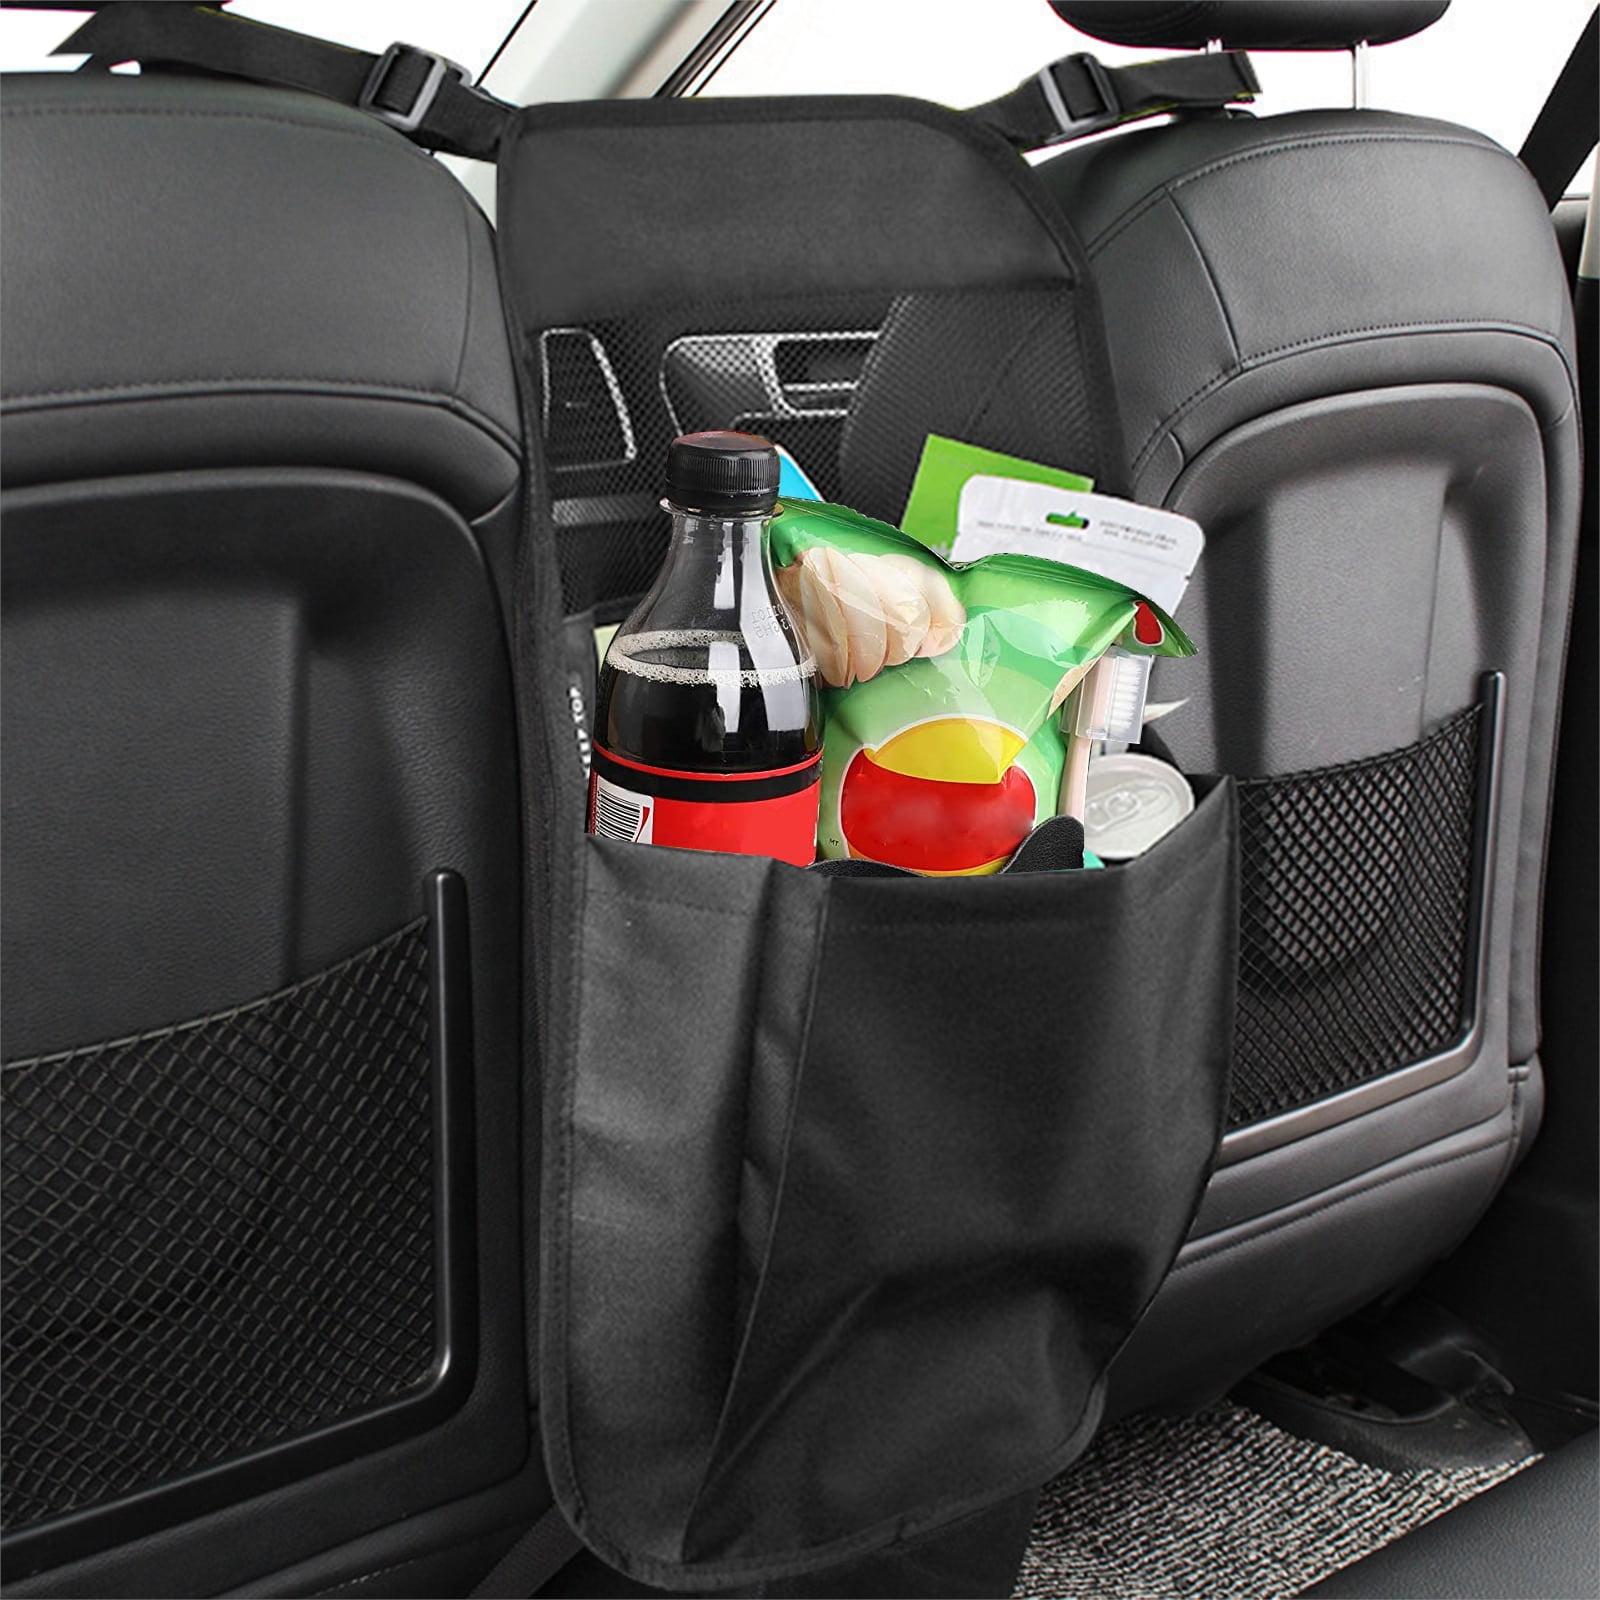 Mesh Large Capacity Handbag Holder for Car Seat Back Organizer Car Accessories Purse Storage & Pocket Bark Lover Car Handbag Holder Barrier of Backseat Pet Kids